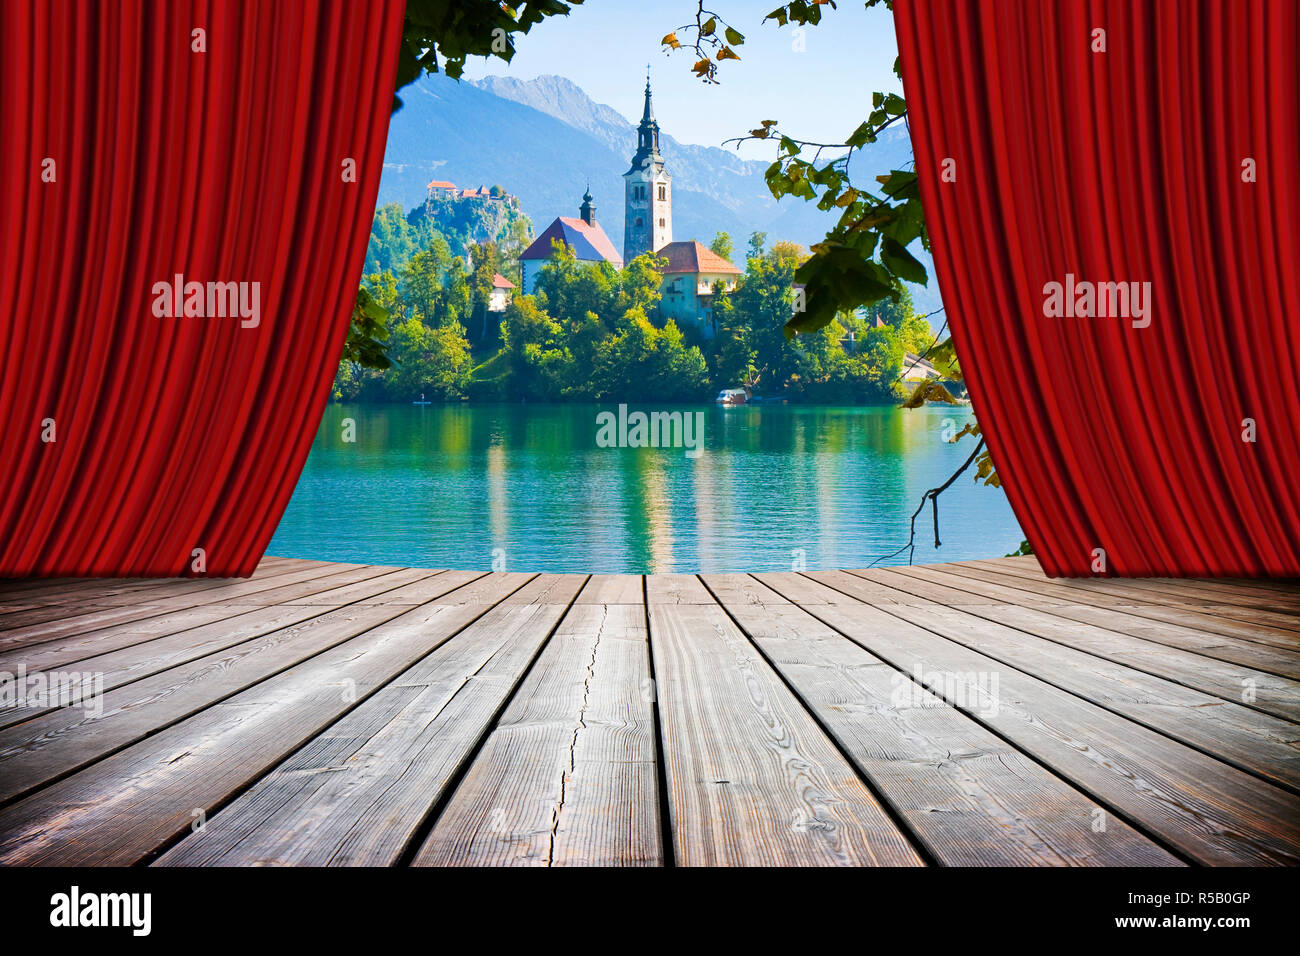 Bleder See, dem berühmten See in Slowenien mit der Insel der Kirche (Europa - Slowenien) - Konzept Bild mit offenen Theater und rote Vorhänge Stockfoto